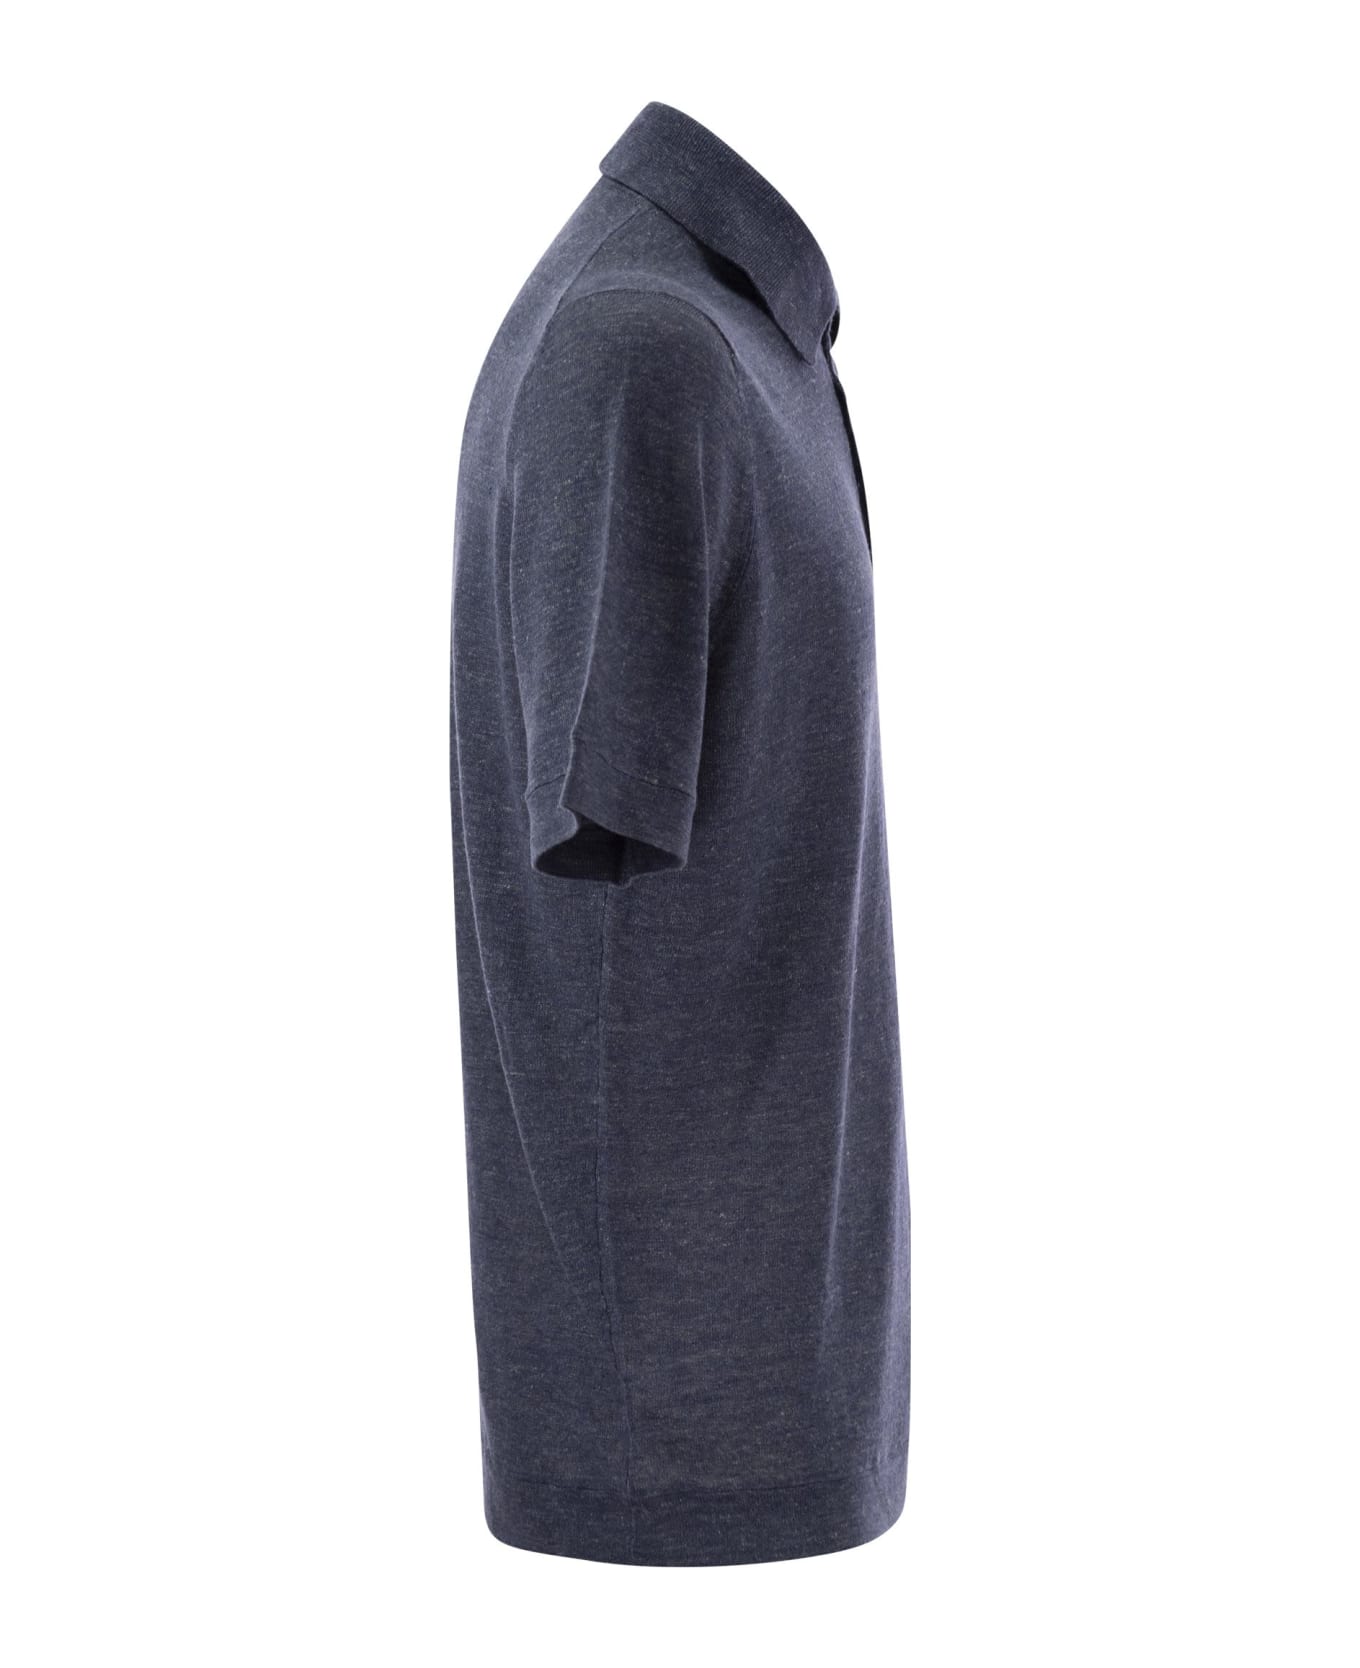 Brunello Cucinelli Linen And Cotton Knit Polo Shirt - NETTUNO ポロシャツ